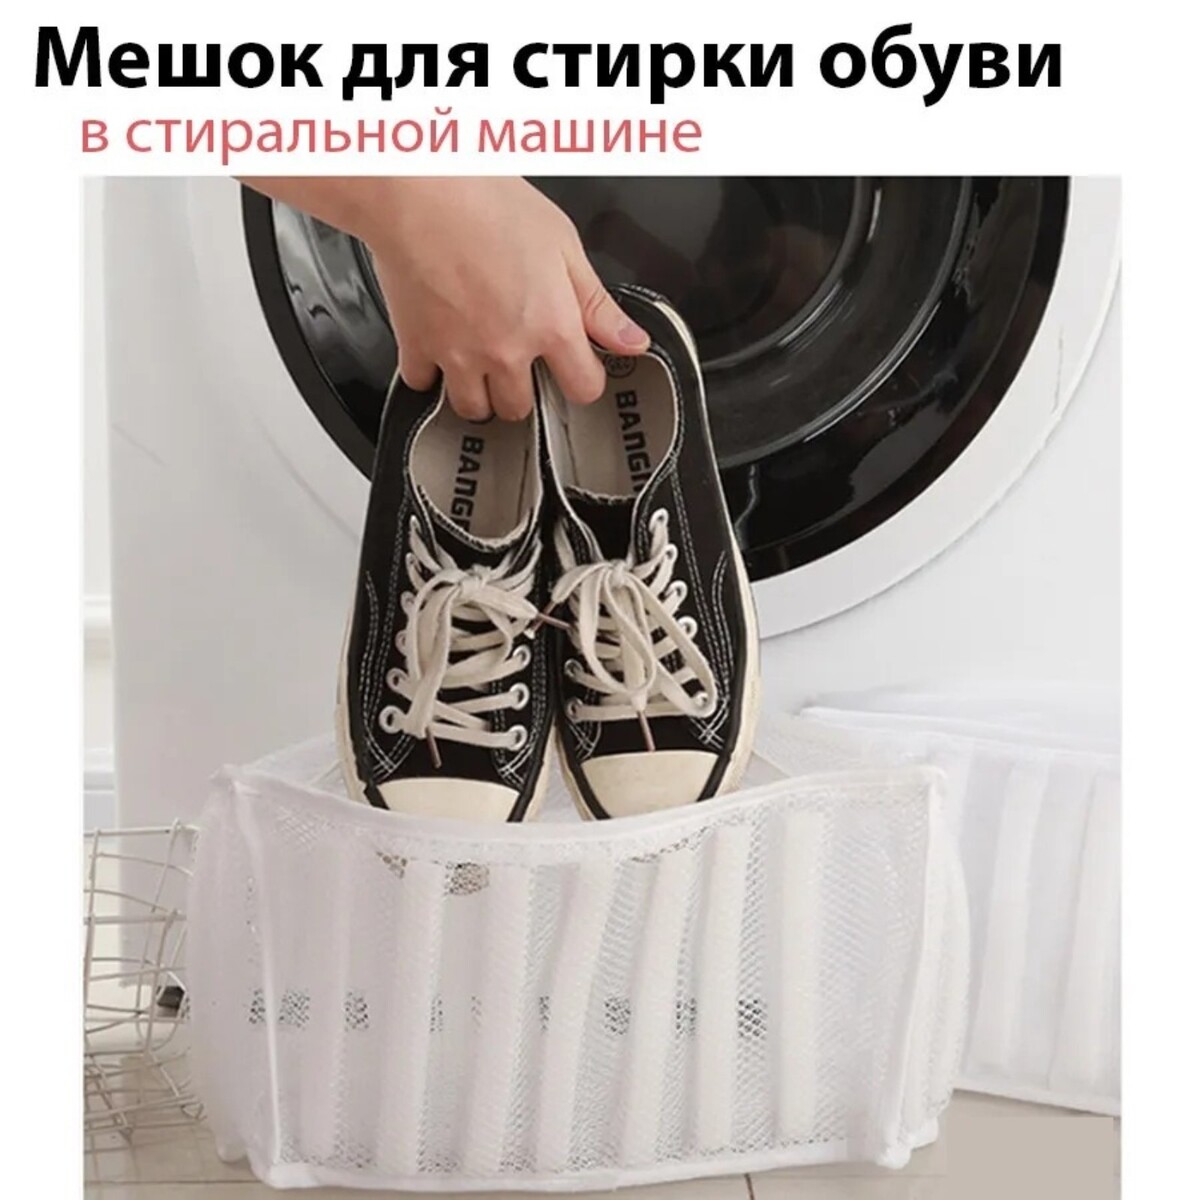 Мешок для стирки обуви доляна, 33×19×18 см, для обуви до 42 размера мешок для стирки белья доляна 50×60 см крупная сетка белый